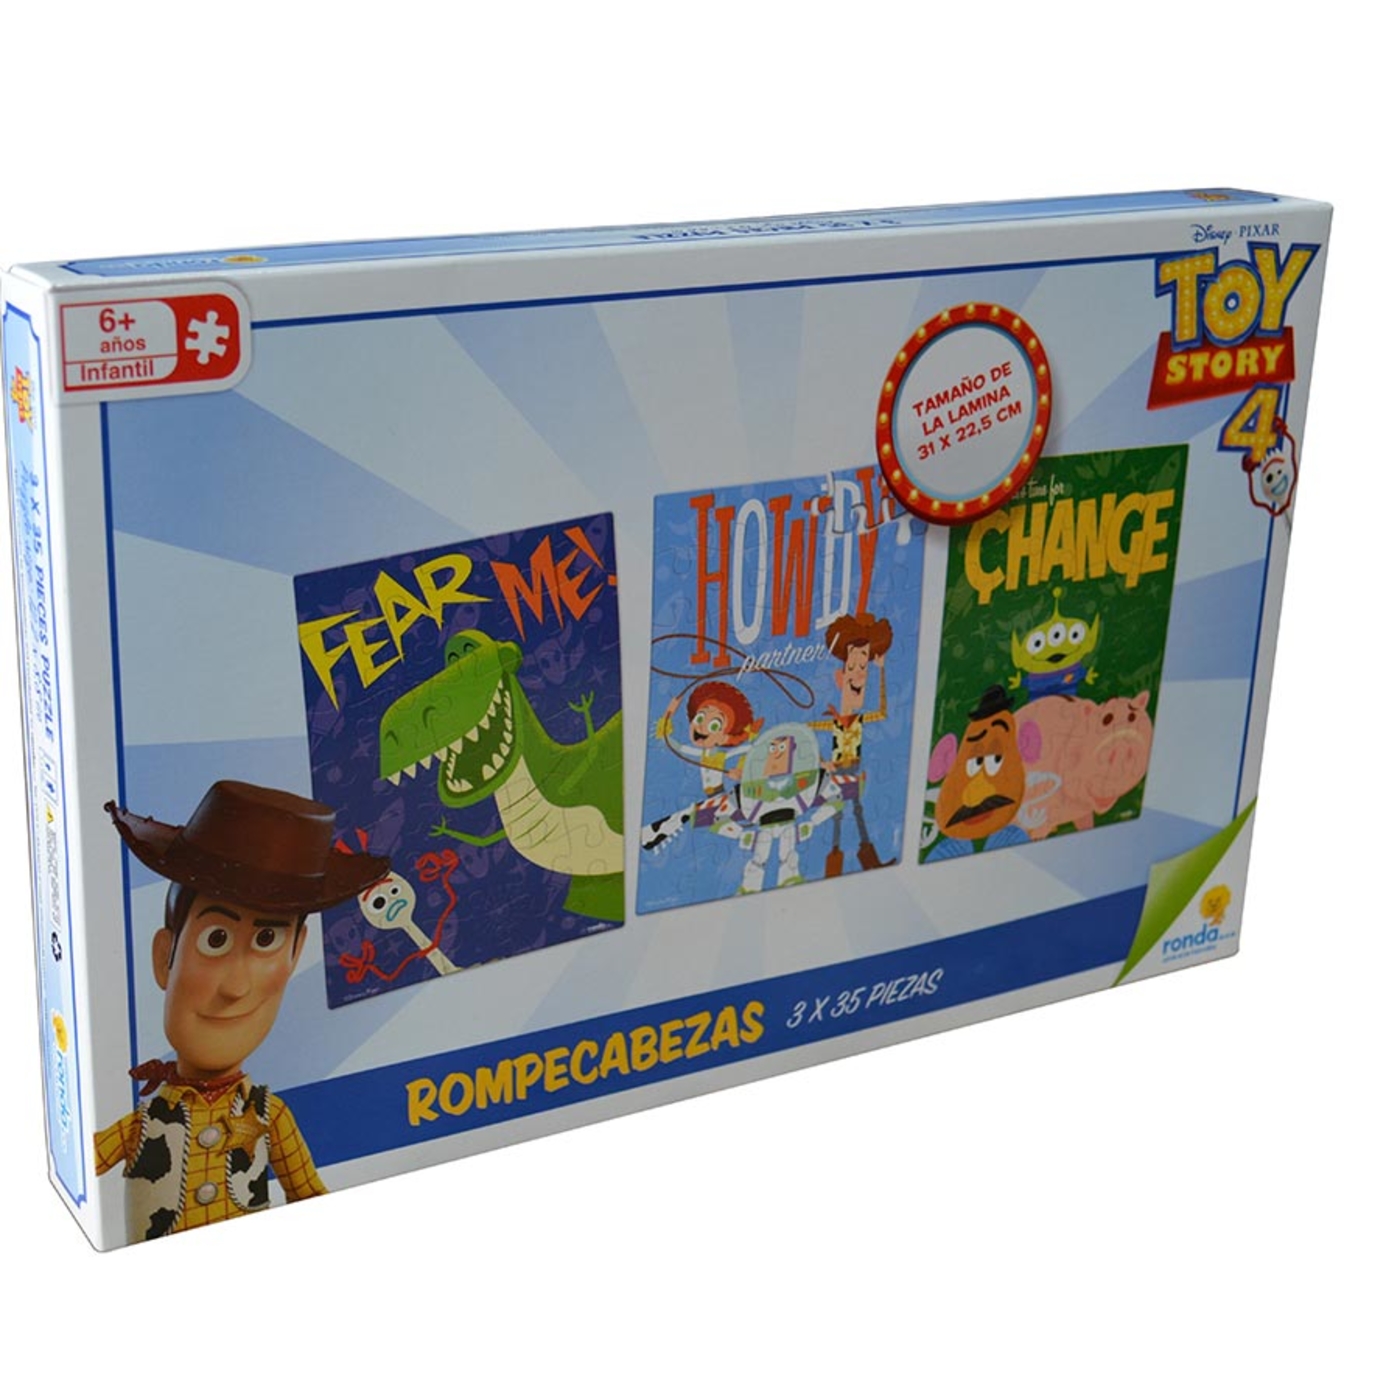 Rompecabezas RONDA (3 X 35 fichas) Toy Story